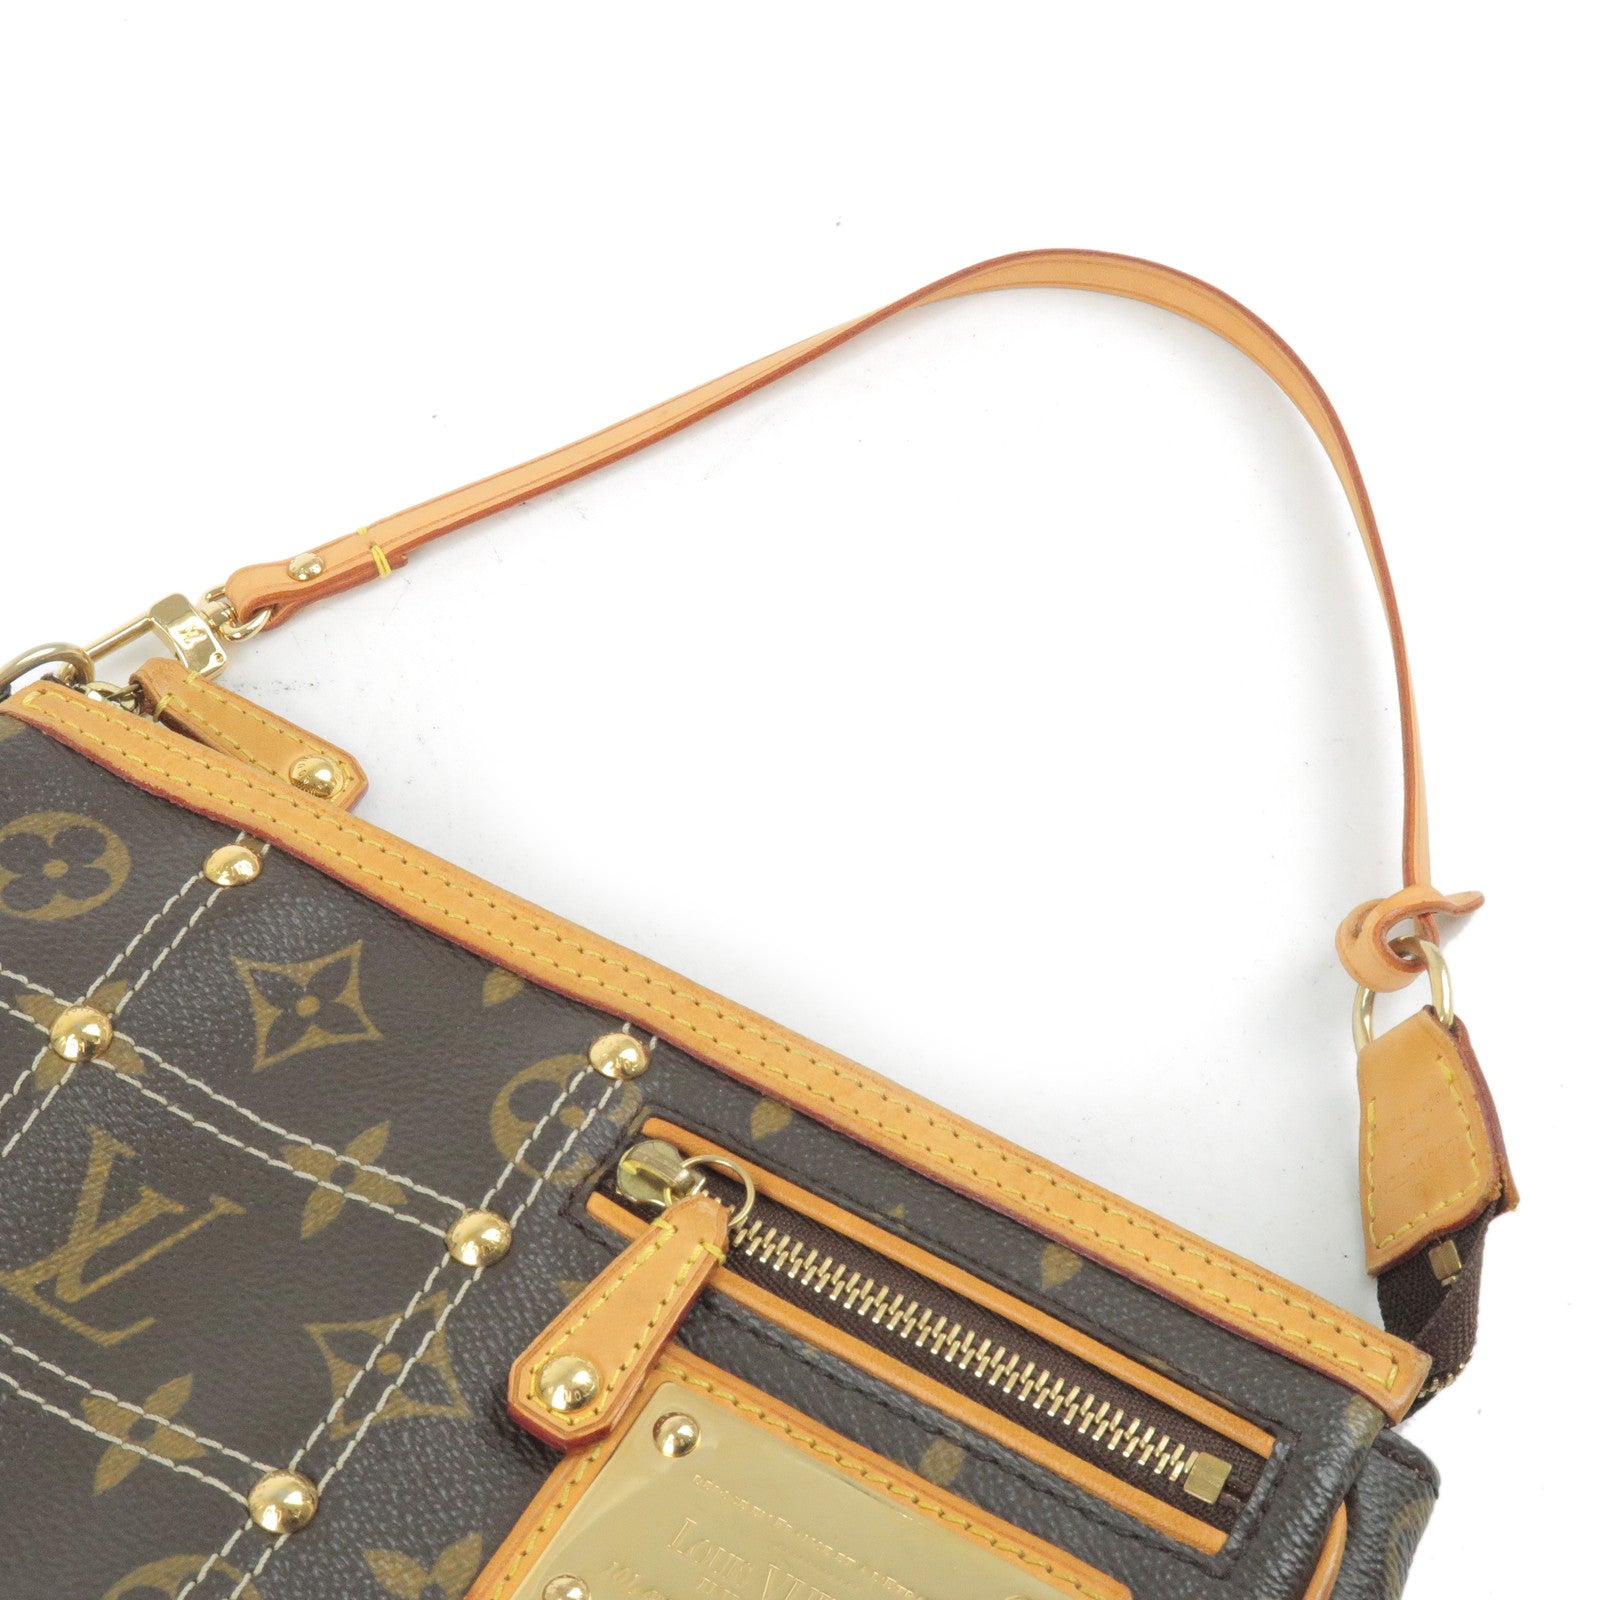 Louis Vuitton Rivets Clutch Bag